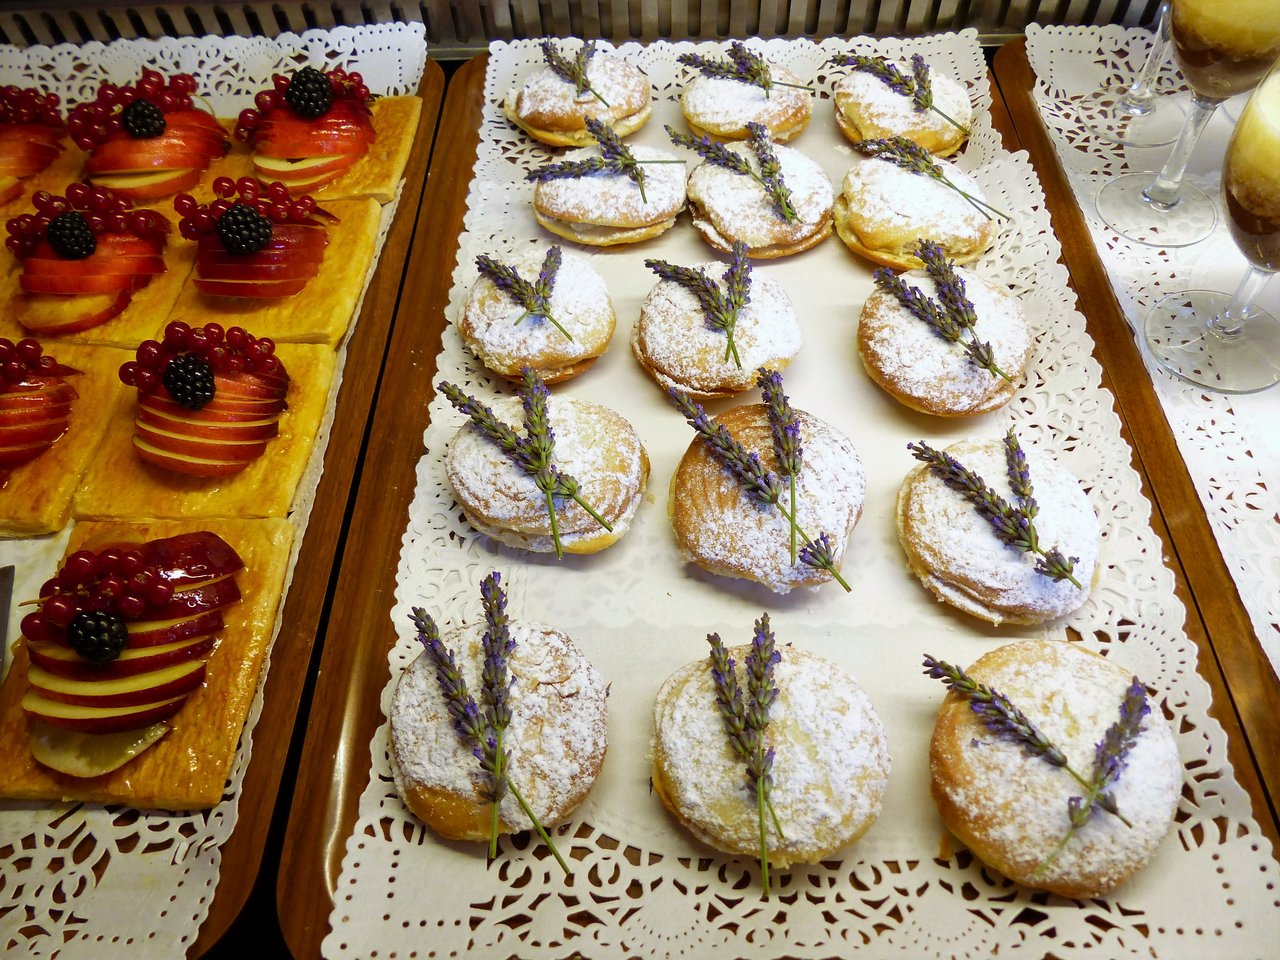 Die traditionell verfügbaren Produkte Lavendel und Einkorn werden in der Region Luberon zu leckeren Spezialitäten verbunden. (Bild Petra Jacob)